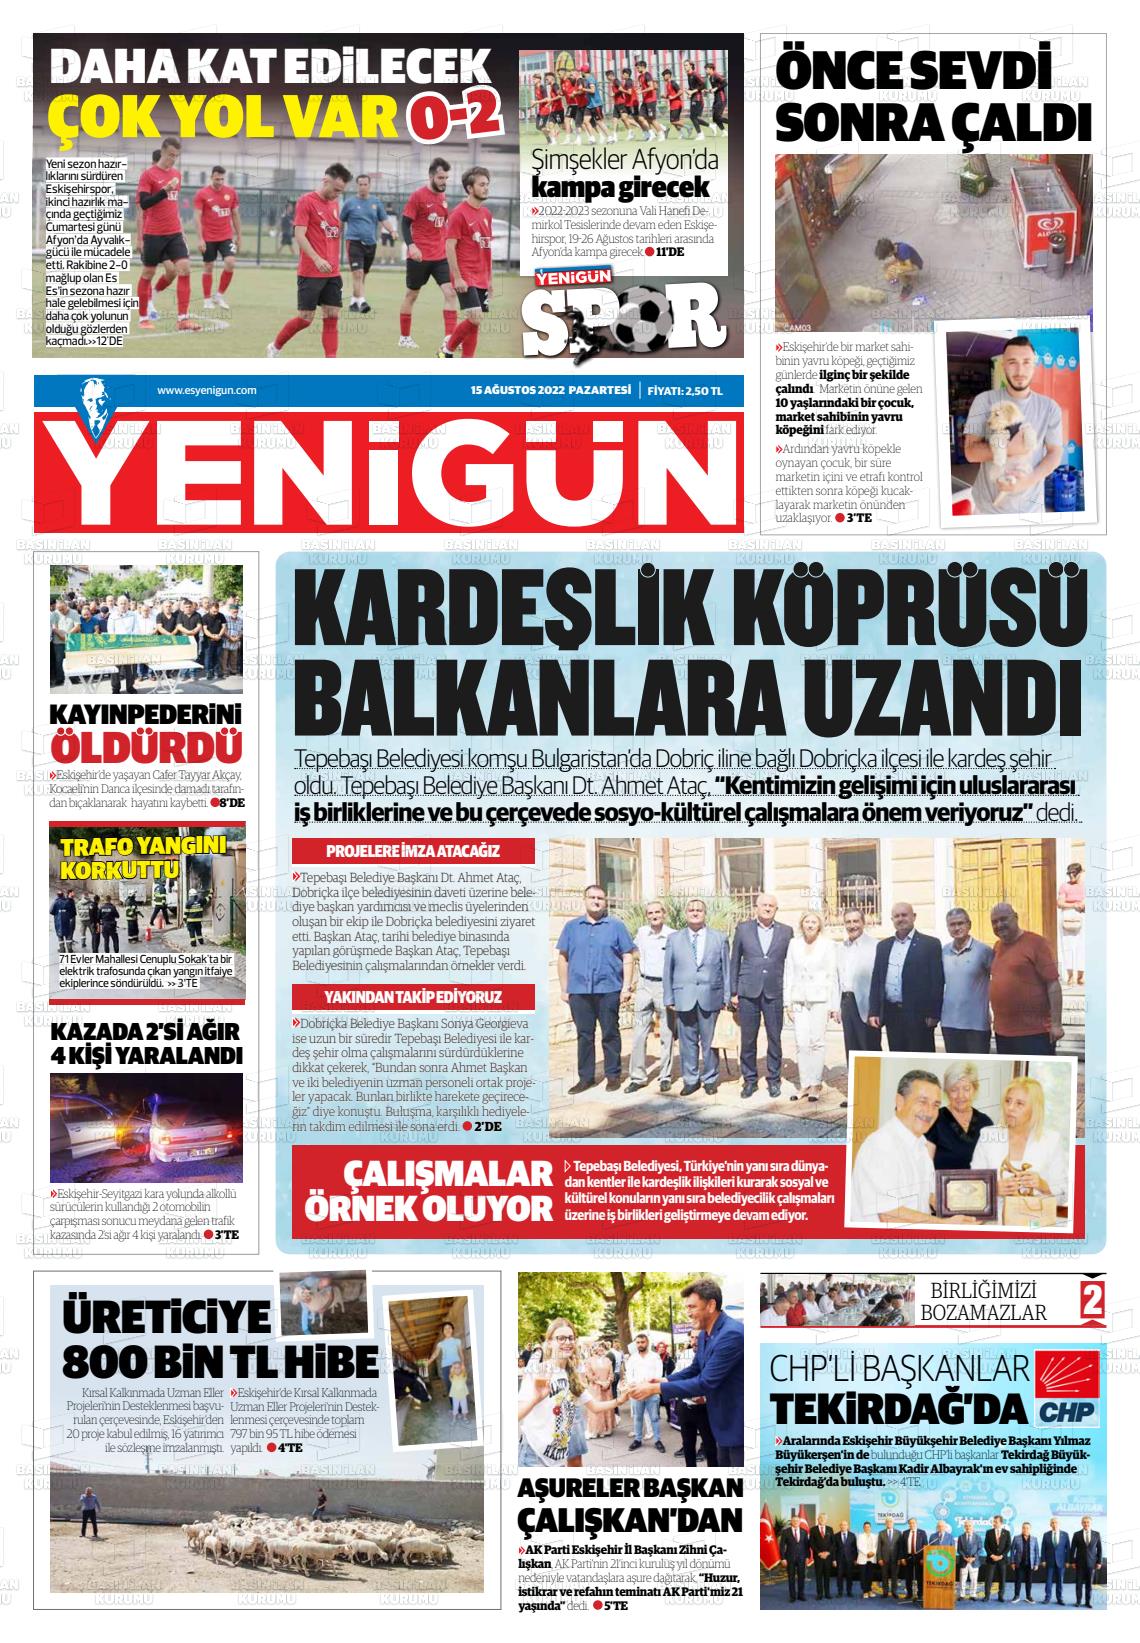 15 Ağustos 2022 Eskişehir Yeni Gün Gazete Manşeti